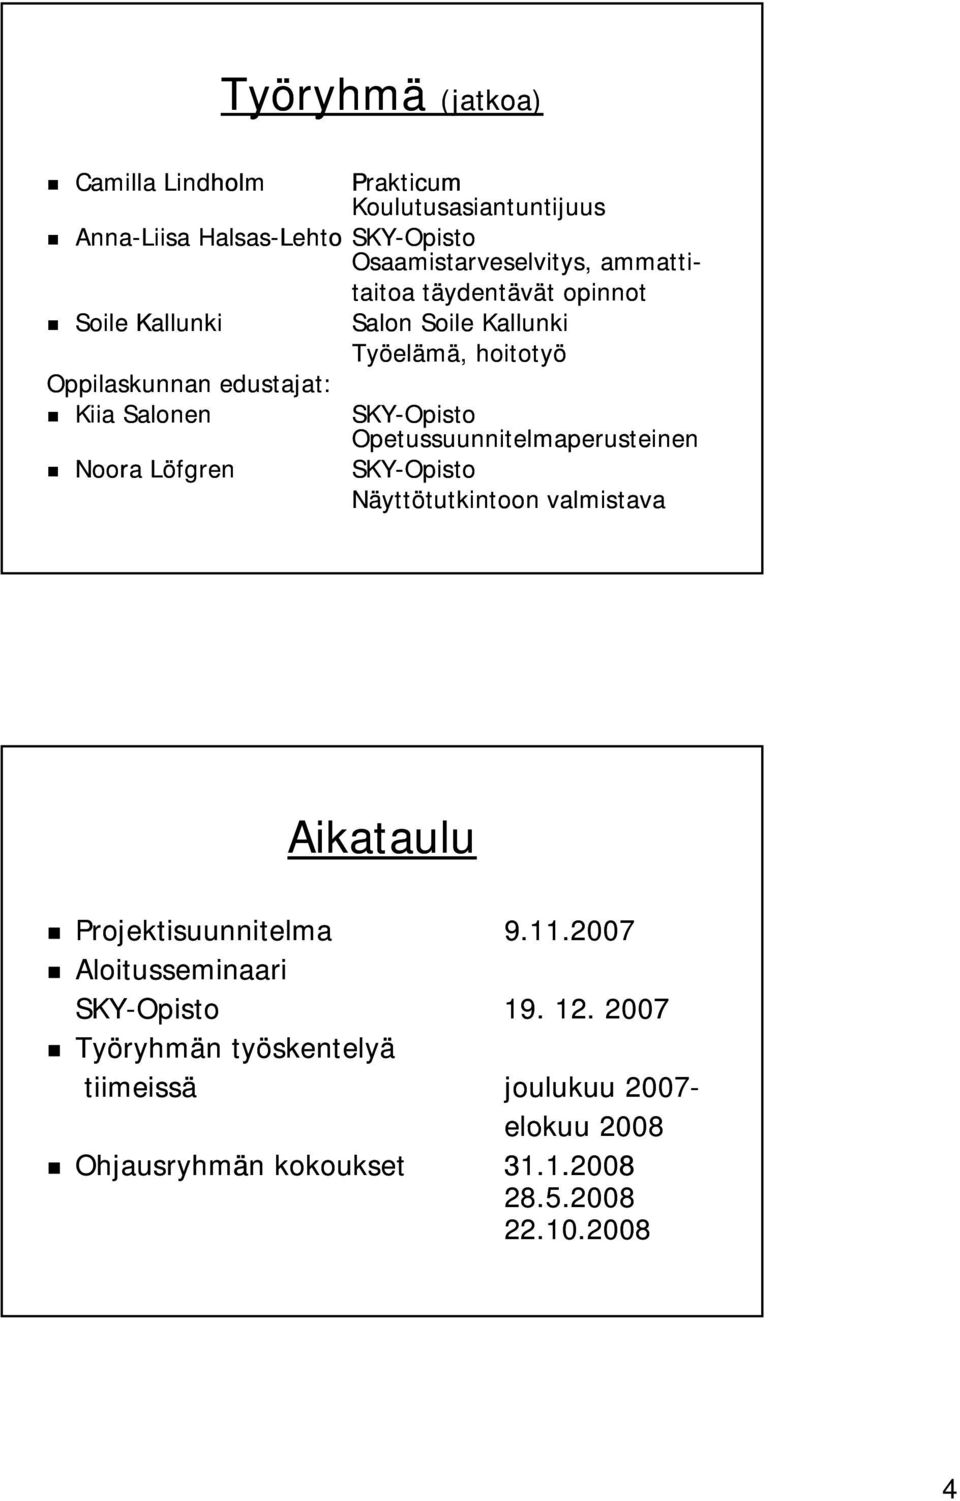 Opetussuunnitelmaperusteinen Noora Löfgren SKY-Opisto Näyttötutkintoon valmistava Aikataulu Projektisuunnitelma 9.11.